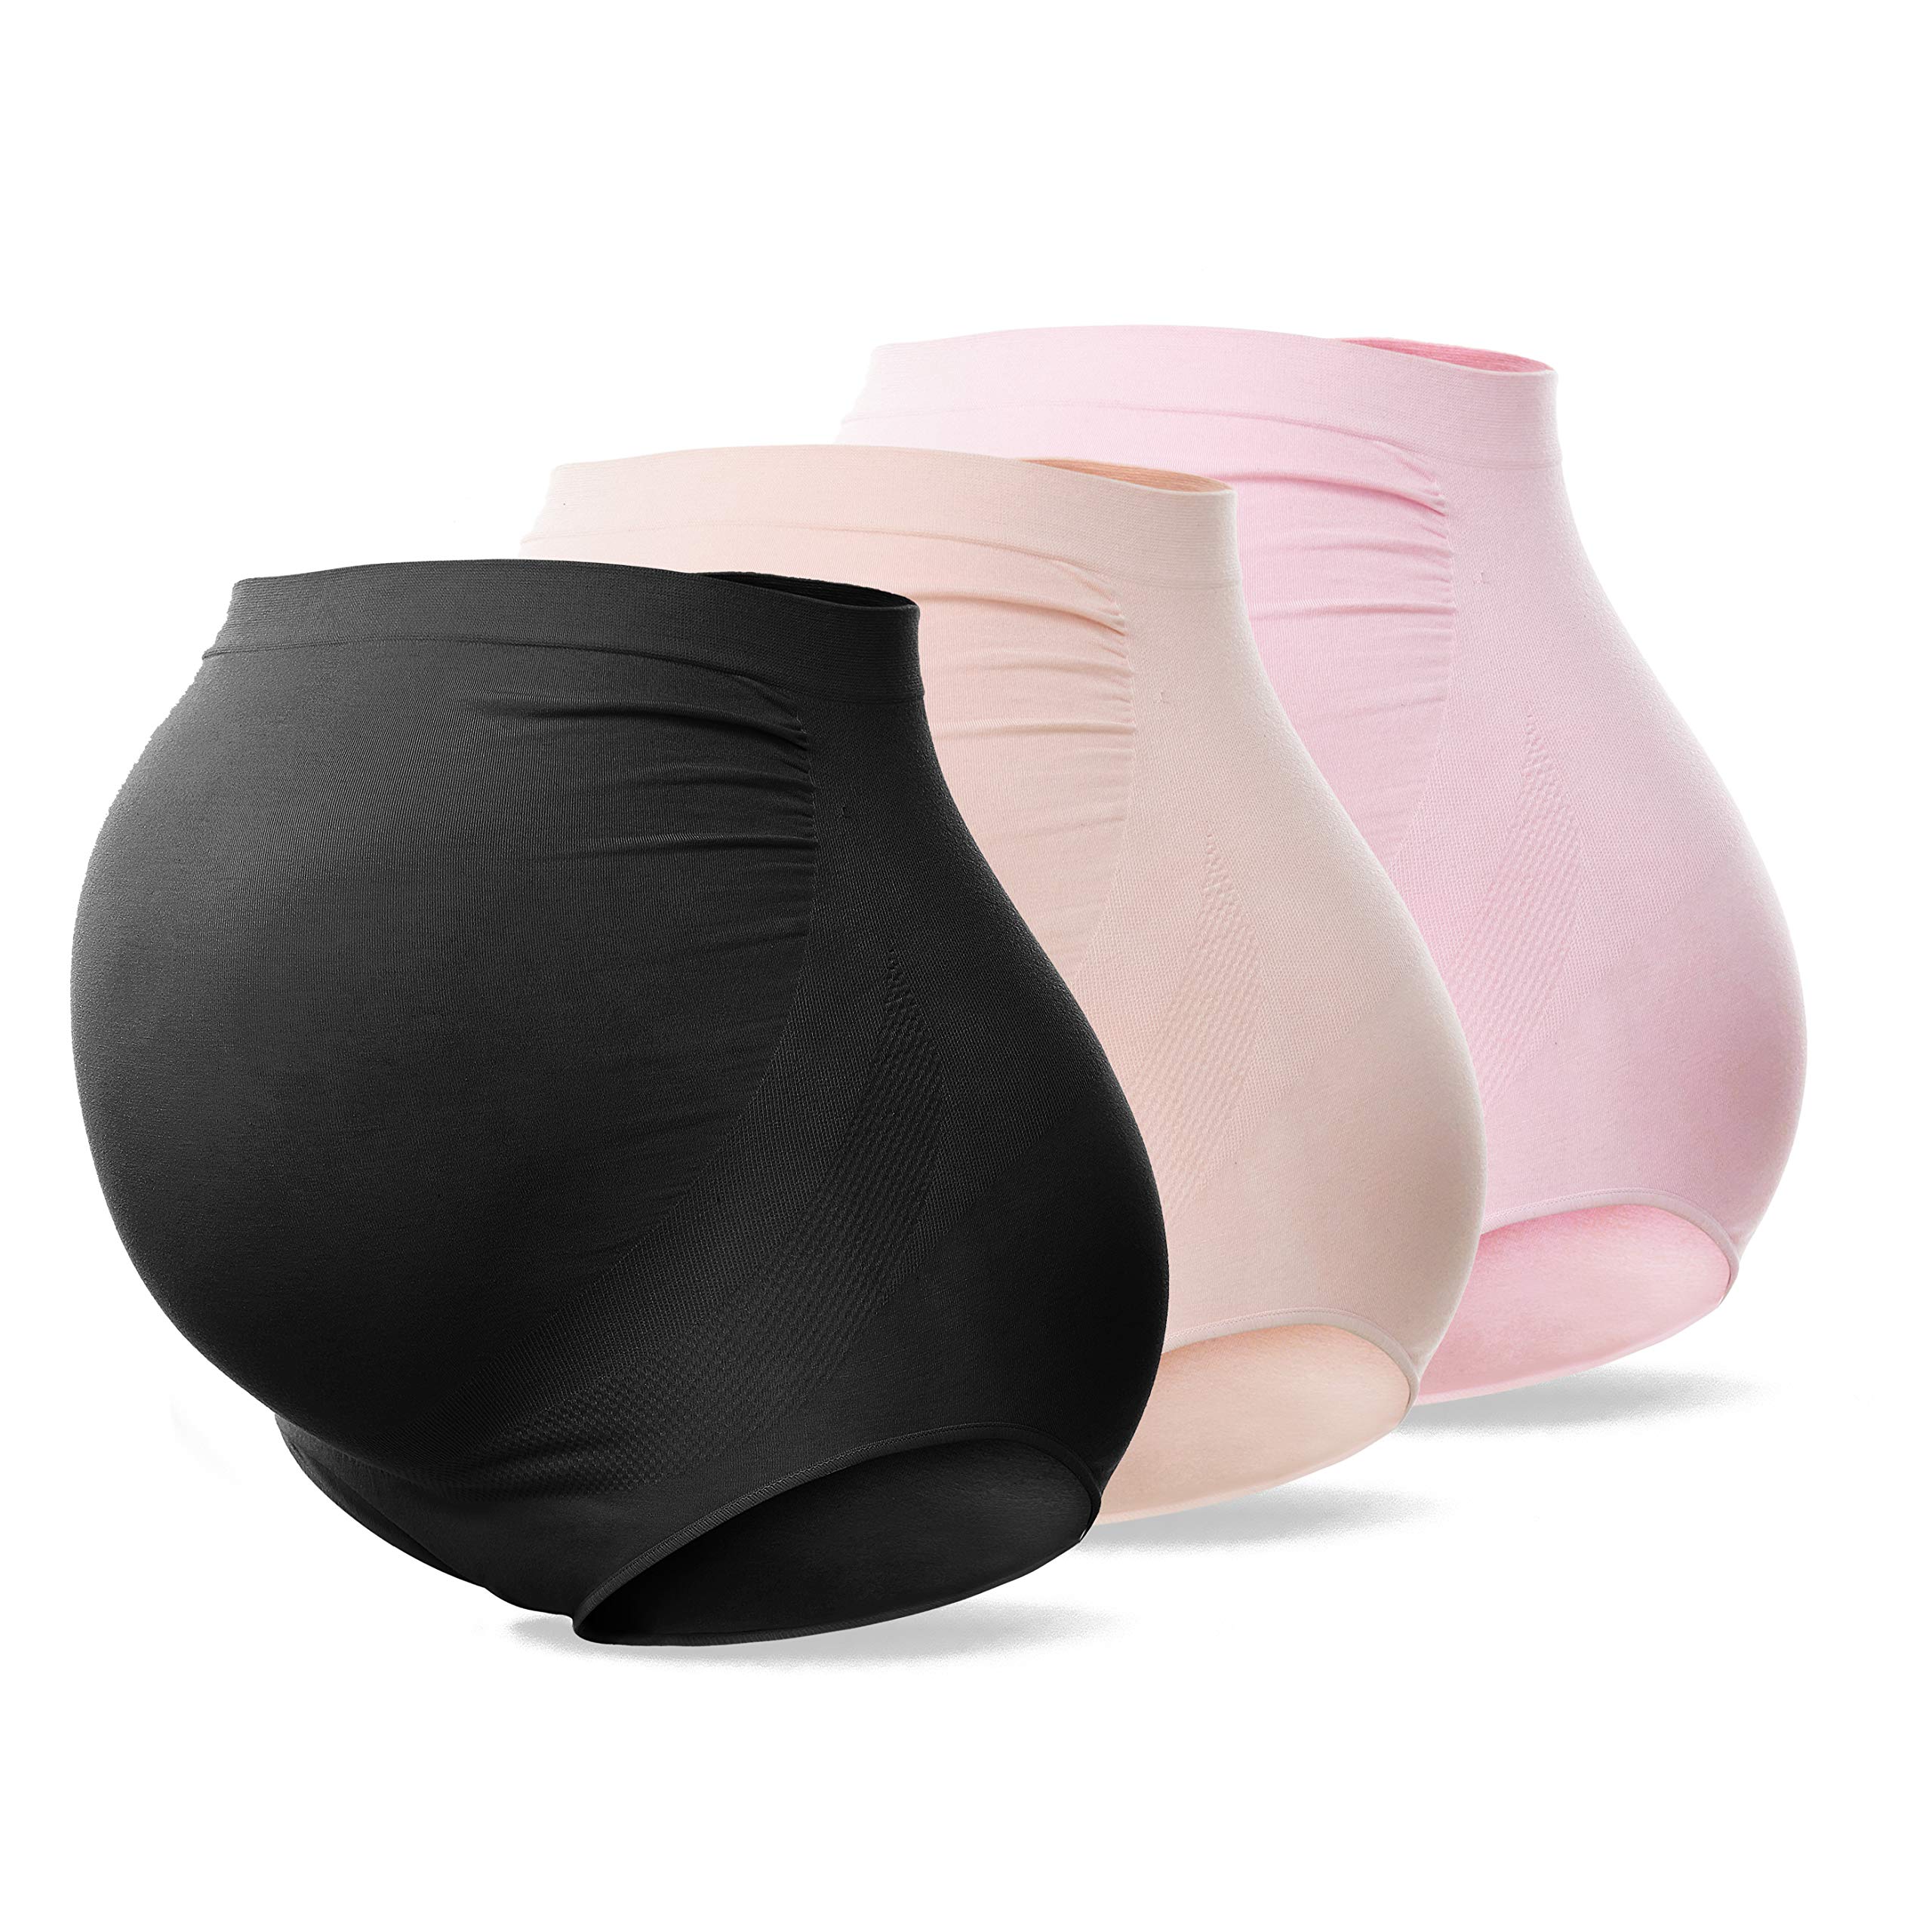 Sunnybuy Womens Maternity High Waist Underwear Pregnancy Seamless Soft Hipster Panties Over Bump (Blackskinpink 3Pk-2Xl)